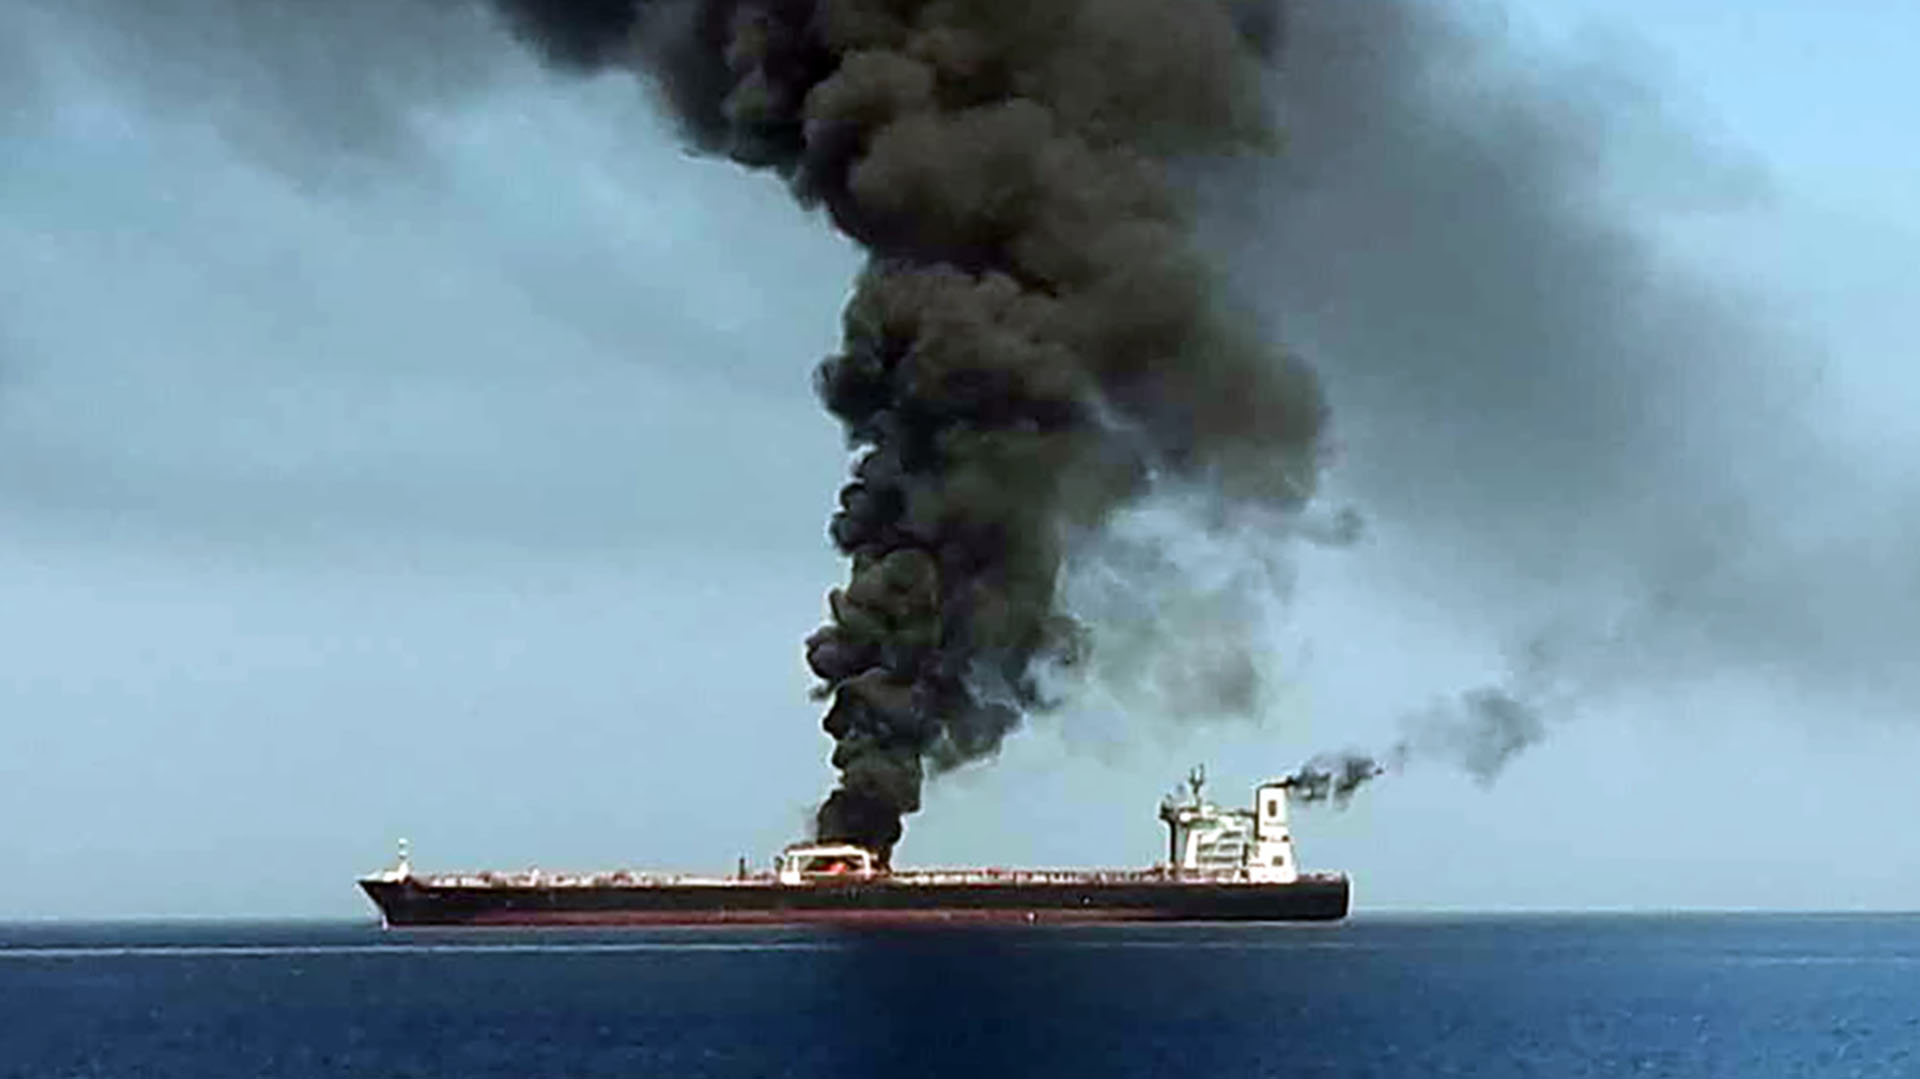 Una foto obtenida por AFP de la televisión estatal iraní IRIB el 13 de junio de 2019 muestra humo que se eleva desde un buque petrolero que supuestamente fue atacado frente a la costa de Omán (Foto de HO / IRIB TV / AFP)